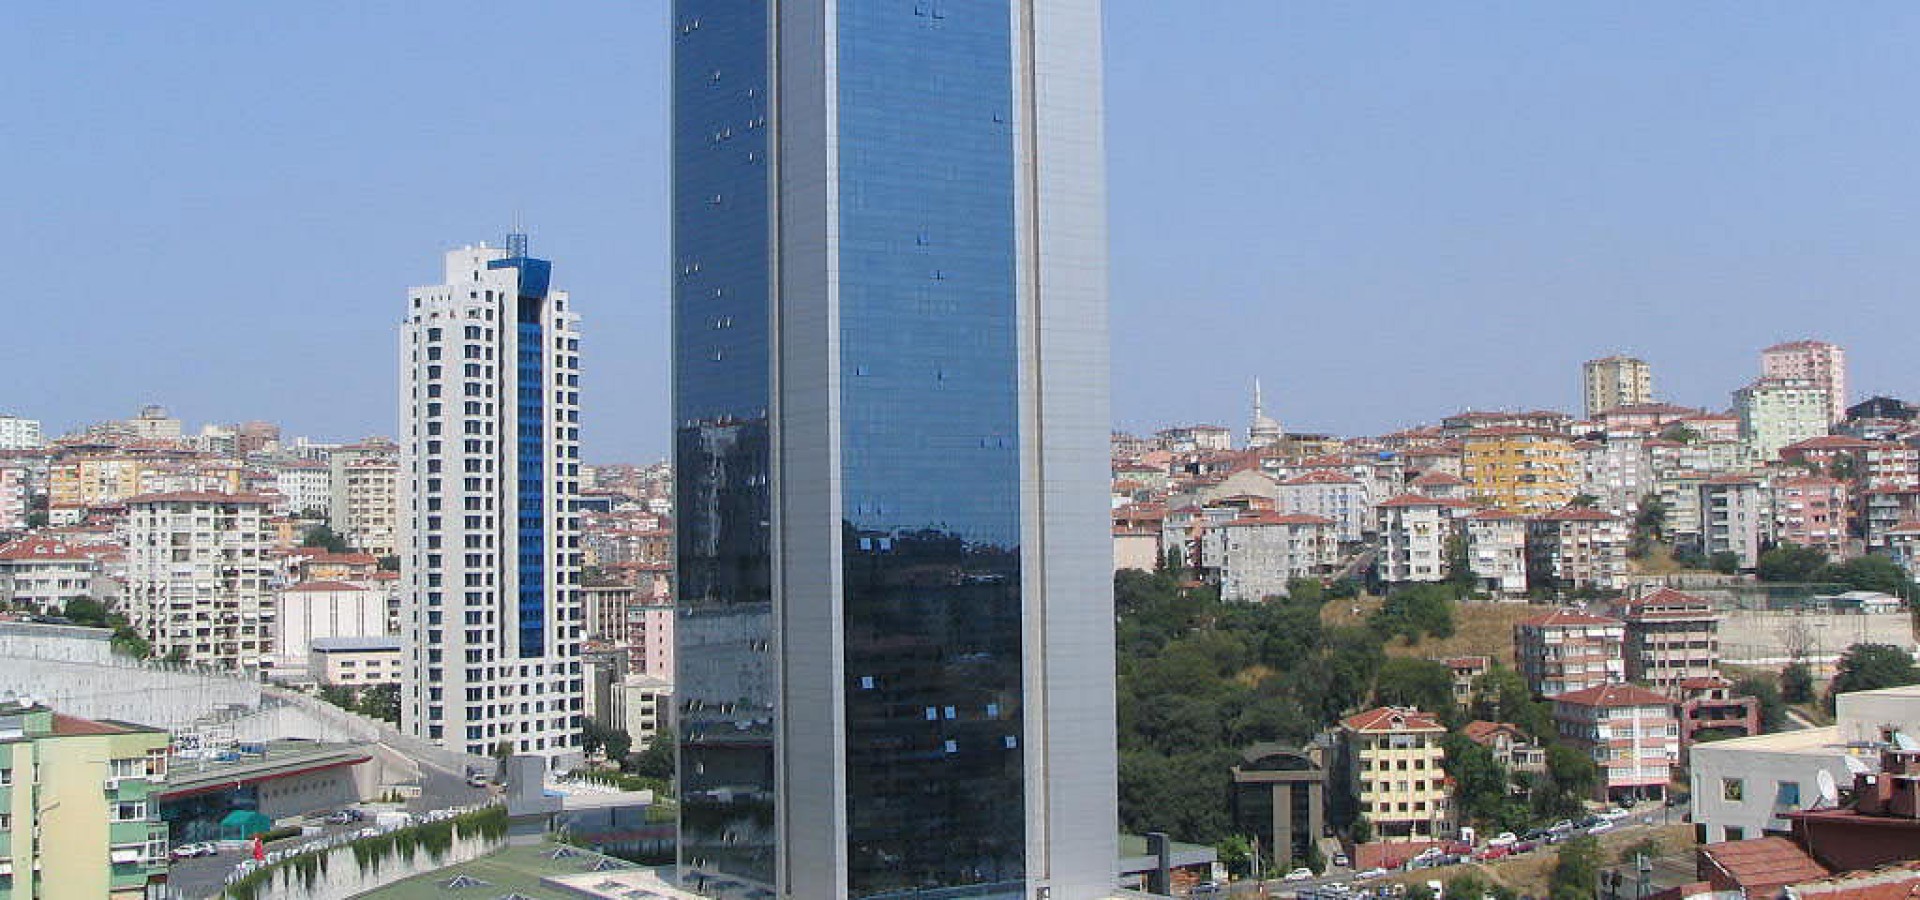 Polat Tower